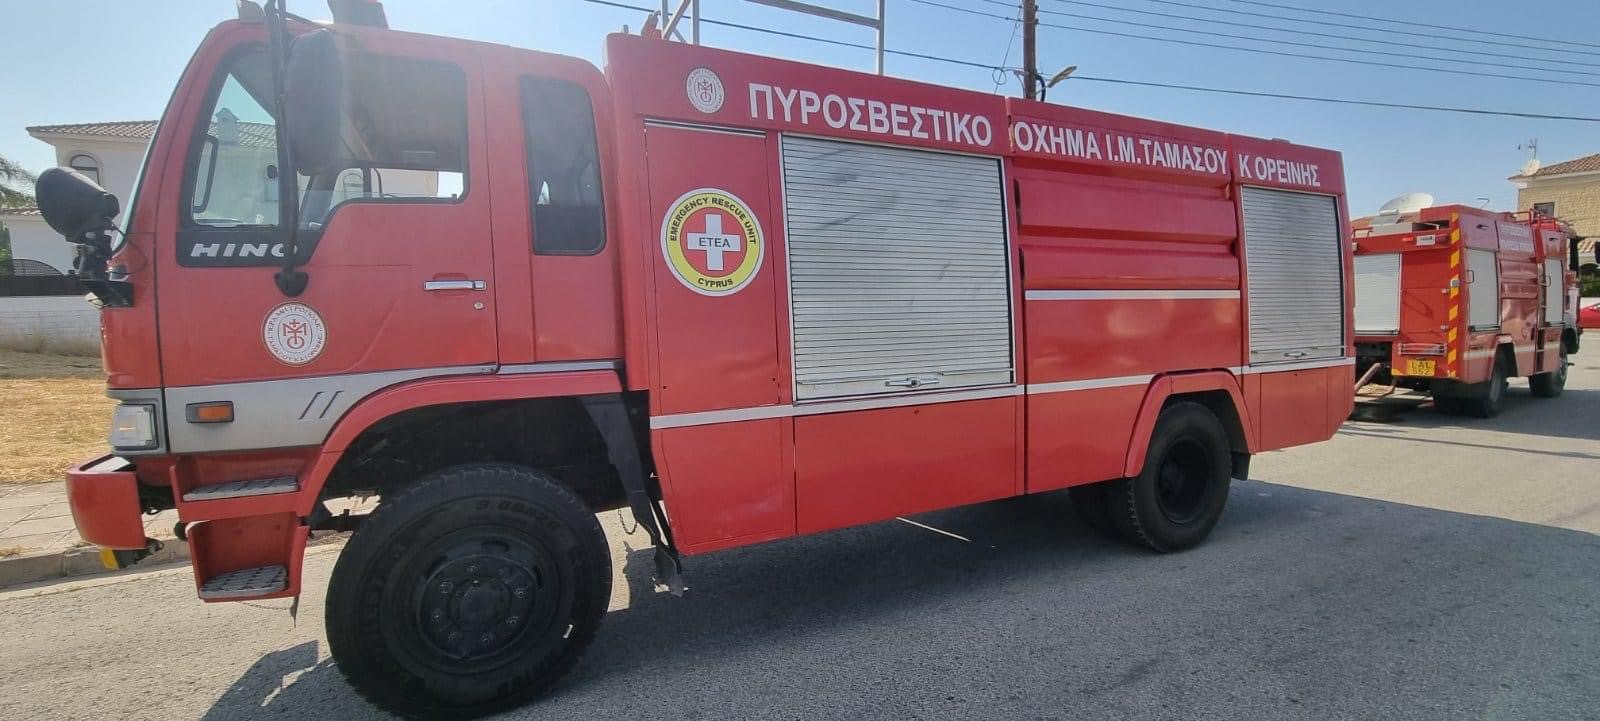 Τροχαίο στη Λάρνακα: Με σοβαρά τραύματα στα πόδια ο οδηγός που απεγκλώβισε η Πυροσβεστική – Εσπευσμένα στο Νοσοκομείο   